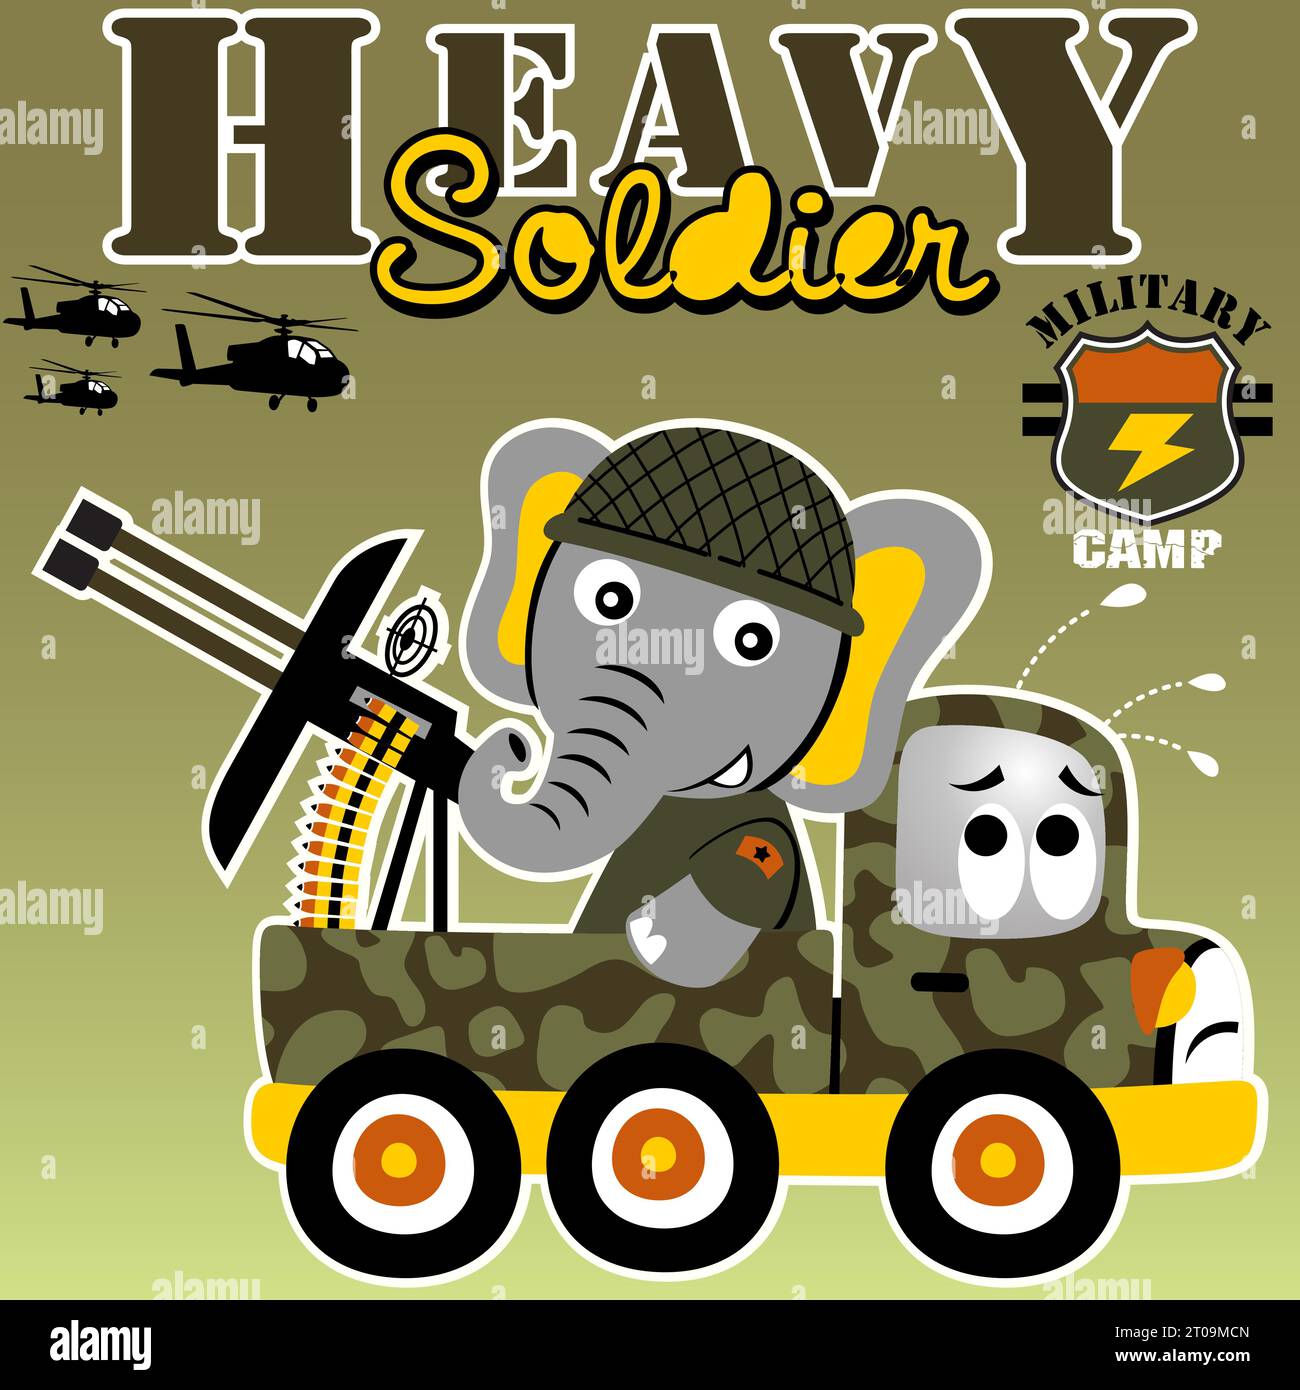 Lustiger Elefant mit Pistole auf Militärwagen, militärische Elemente, Vektor-Zeichentrickillustration Stock Vektor